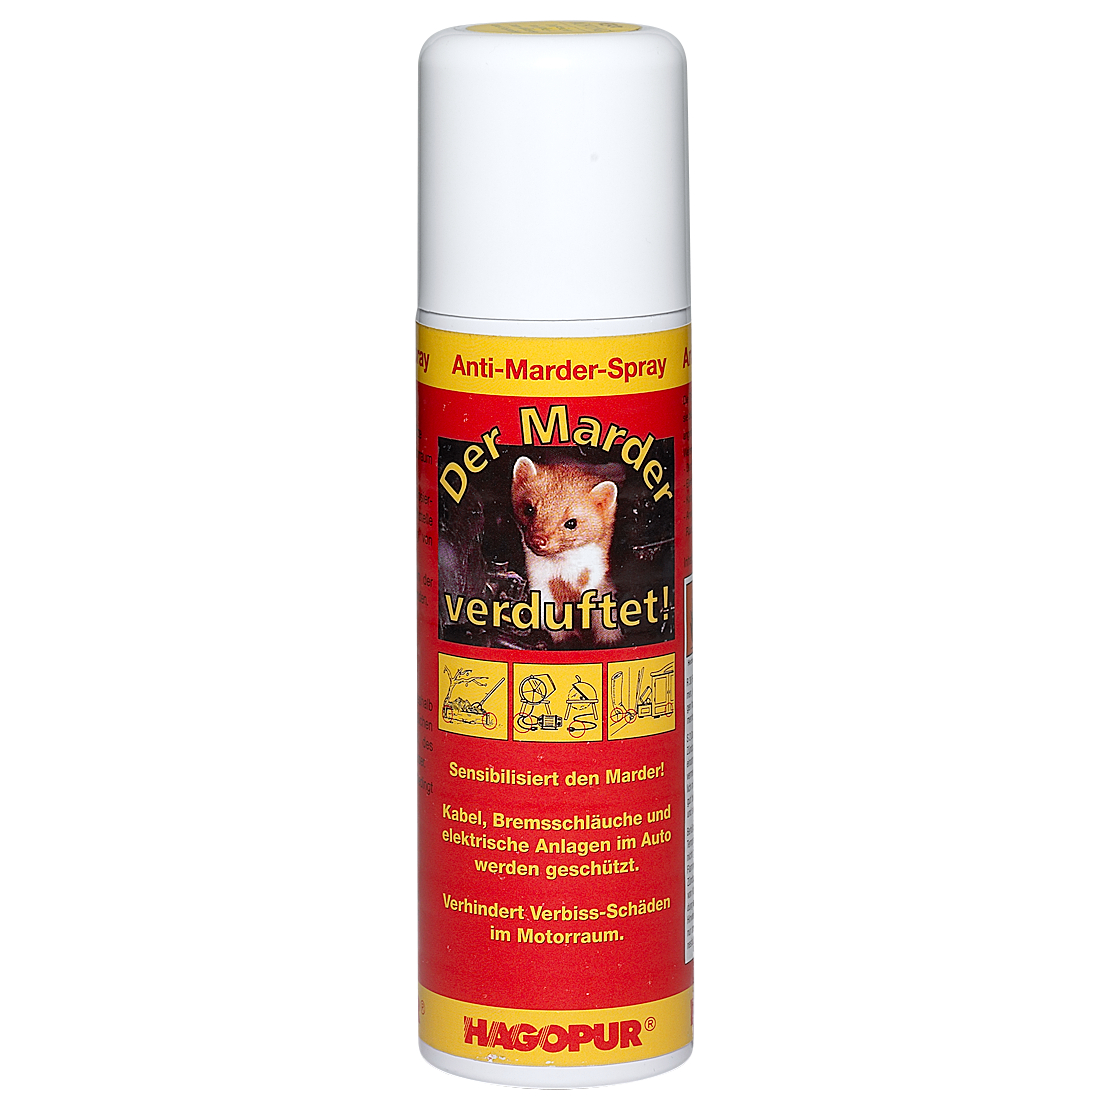 Marten Protection Spray 